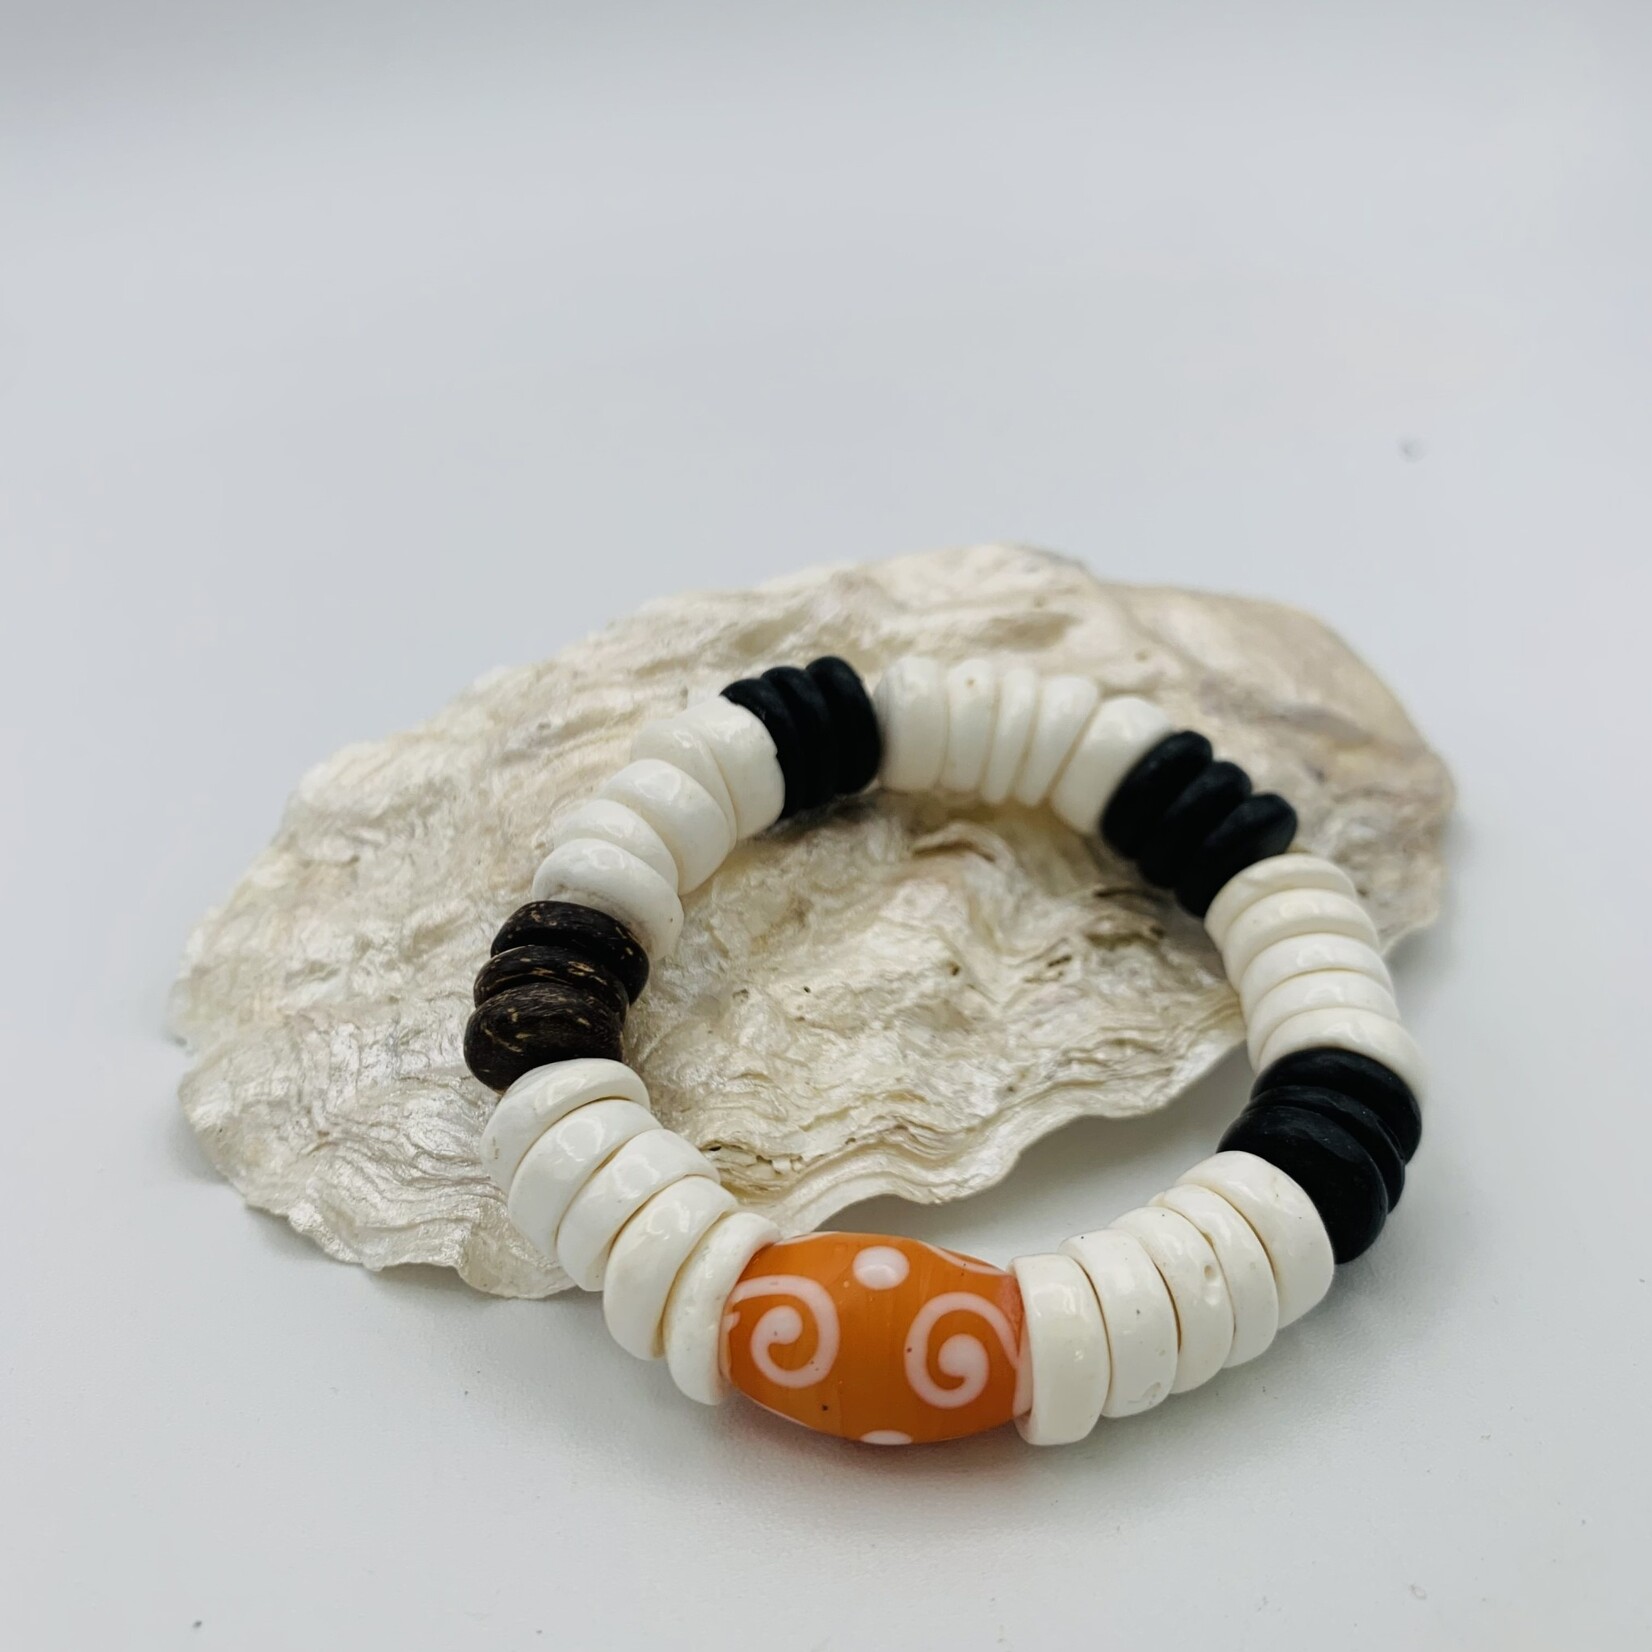 Shell Of A Life Polished Puka + Coconut Beads + Orange Glass Bead Bracelet